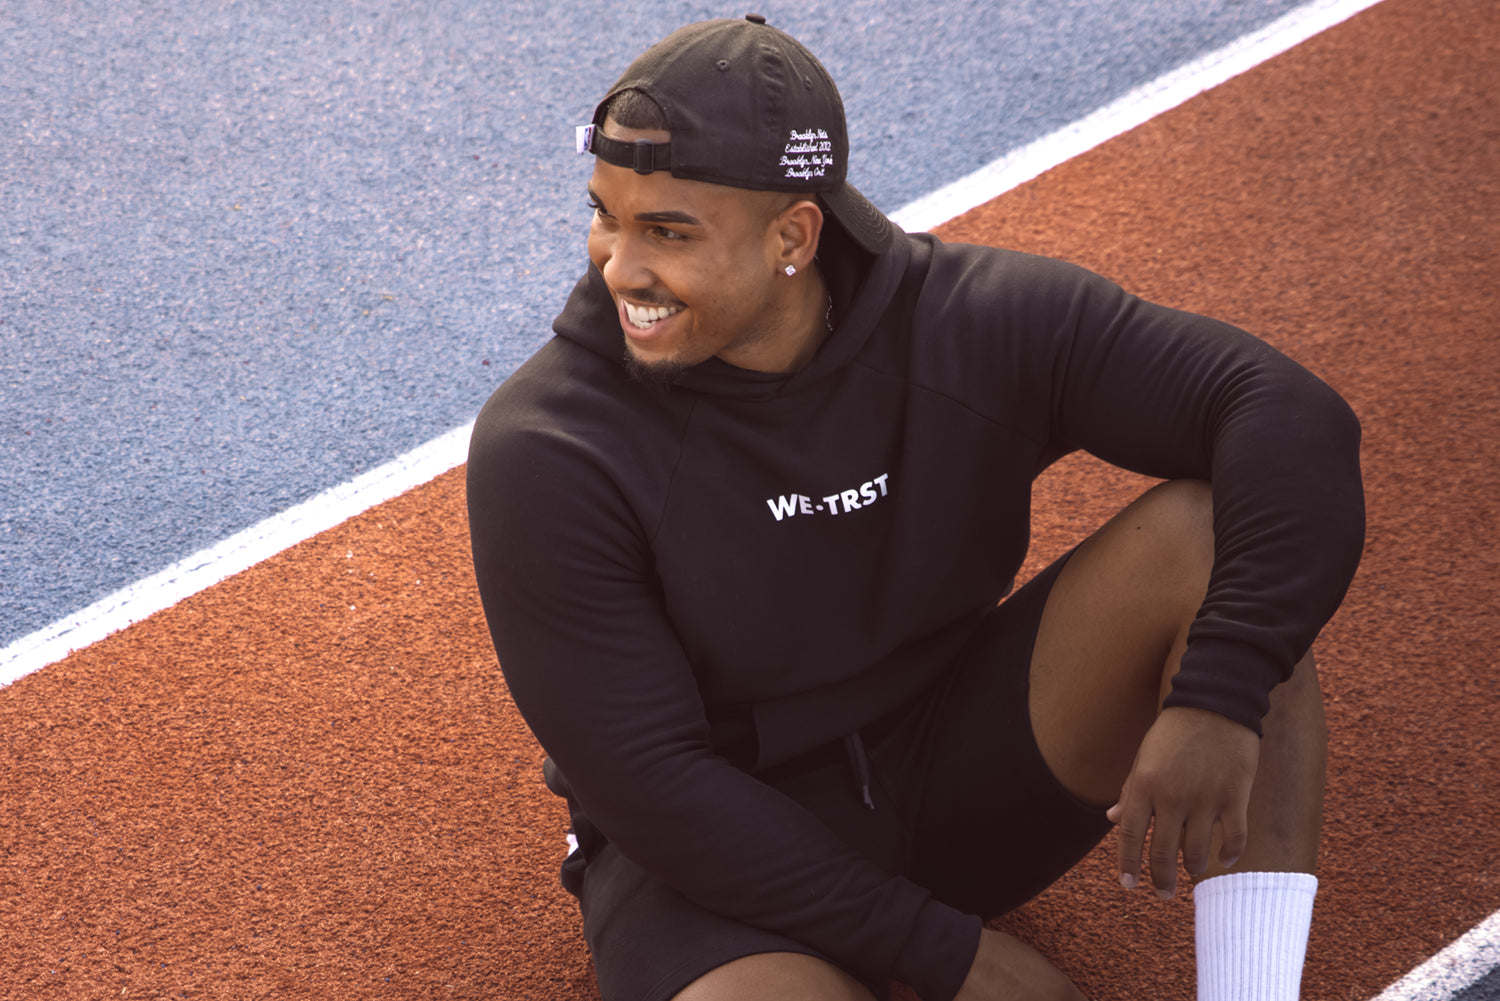 Ein junger afroamerikanischer Mann sitzt auf einem Sportplatz und trägt einen Hoodie von WE•TRST. Er strahlt ein glückliches Lächeln aus und wirkt sehr zufrieden und entspannt.